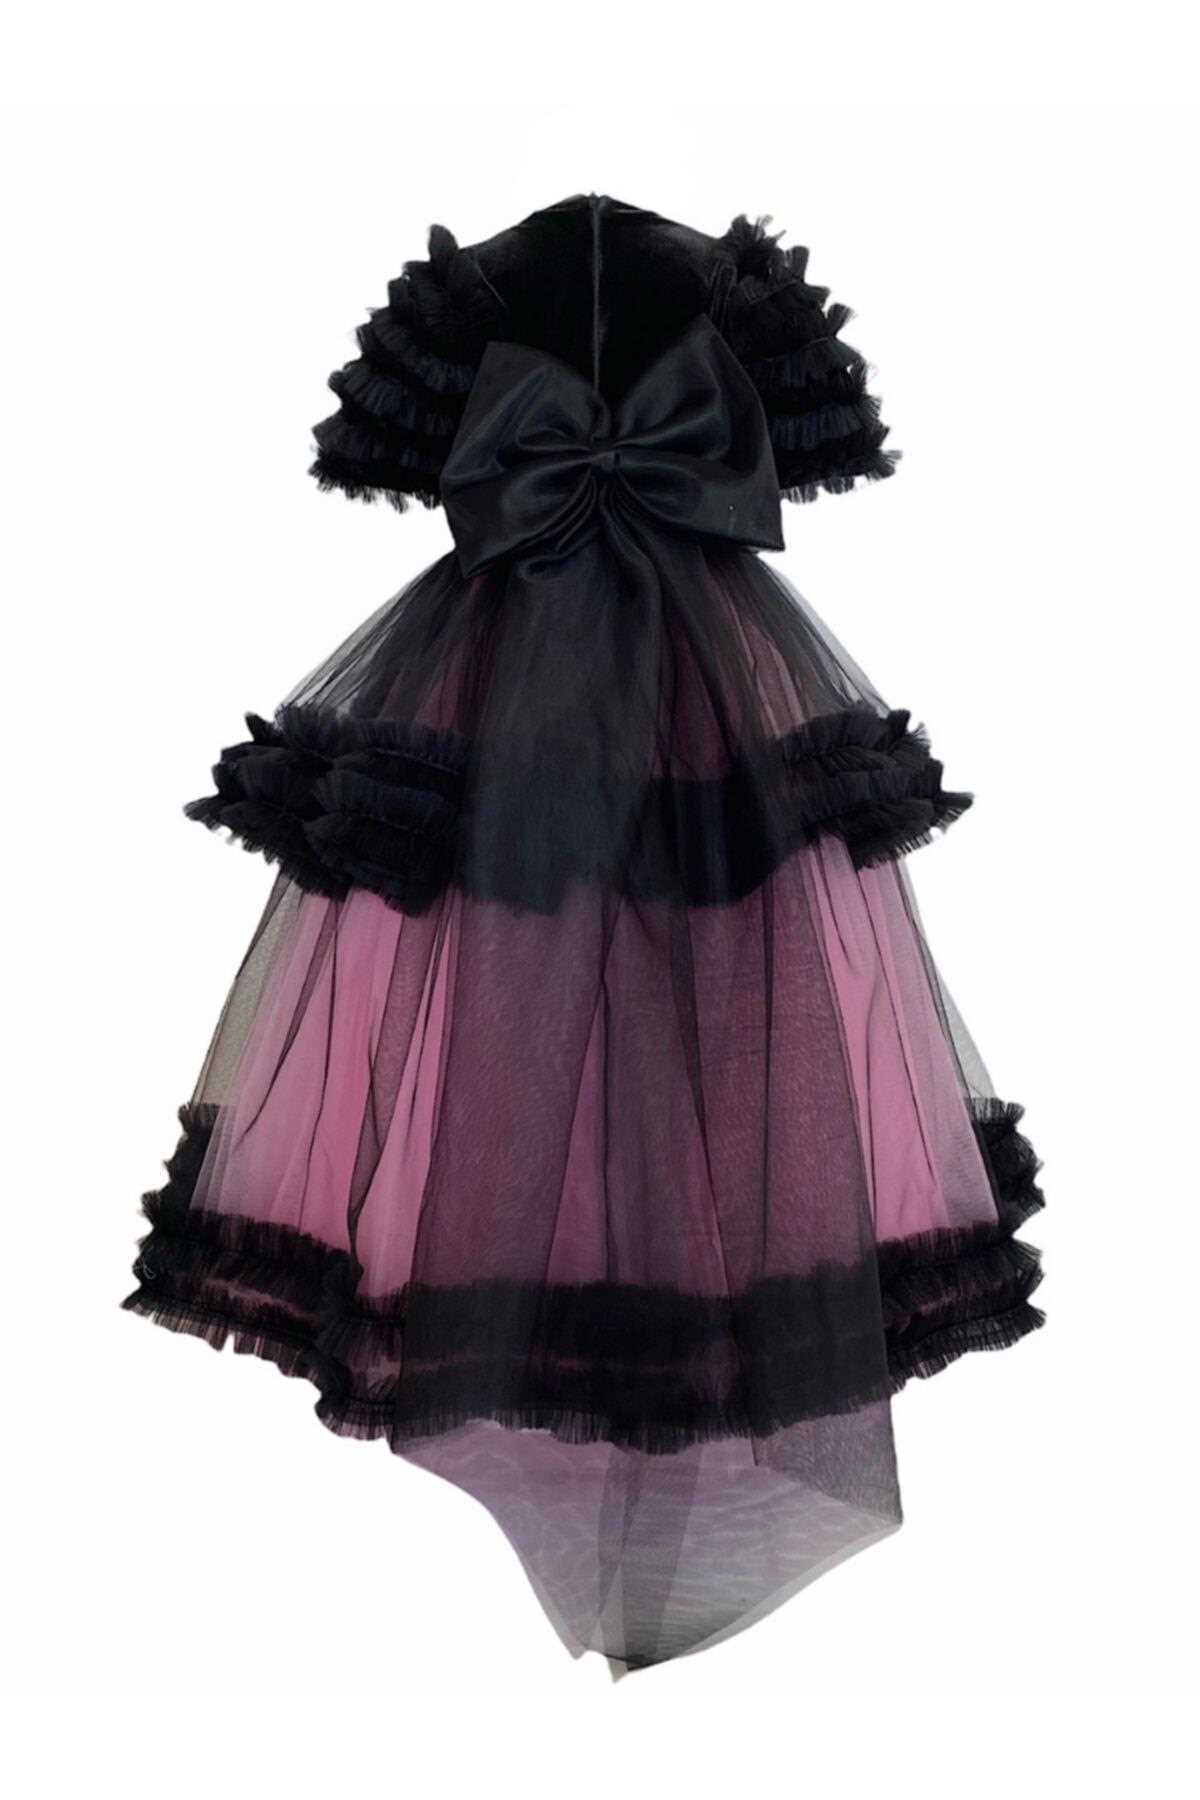 فروش لباس مجلسی دخترانه 2021 شیک zühre balaban رنگ مشکی کد ty153273525